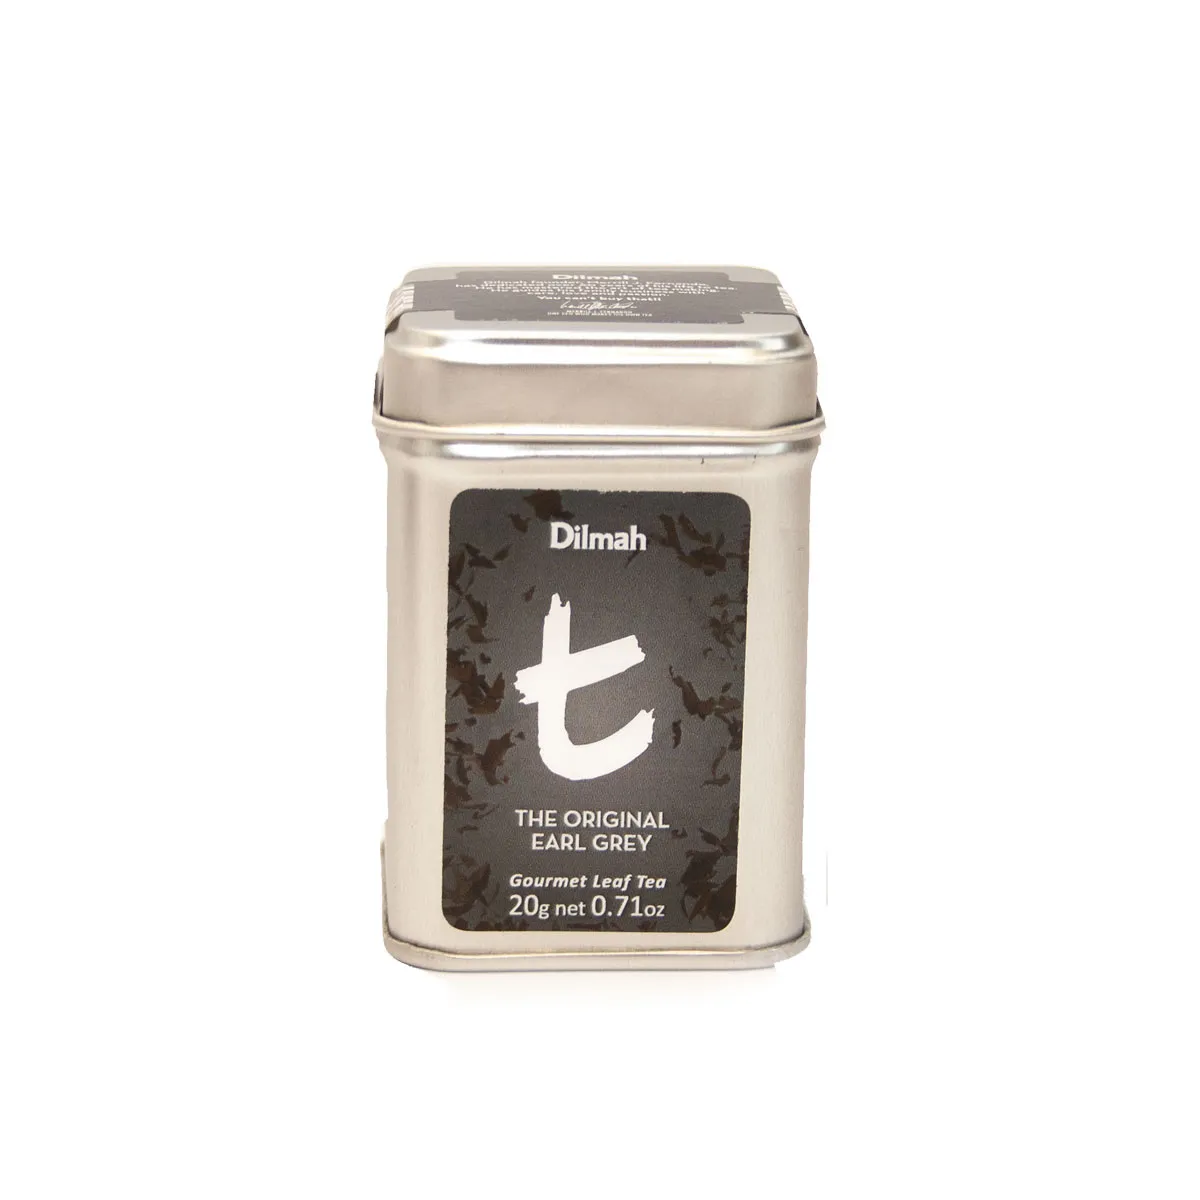 Mini Original Earl Grey loose leaf tea in tin